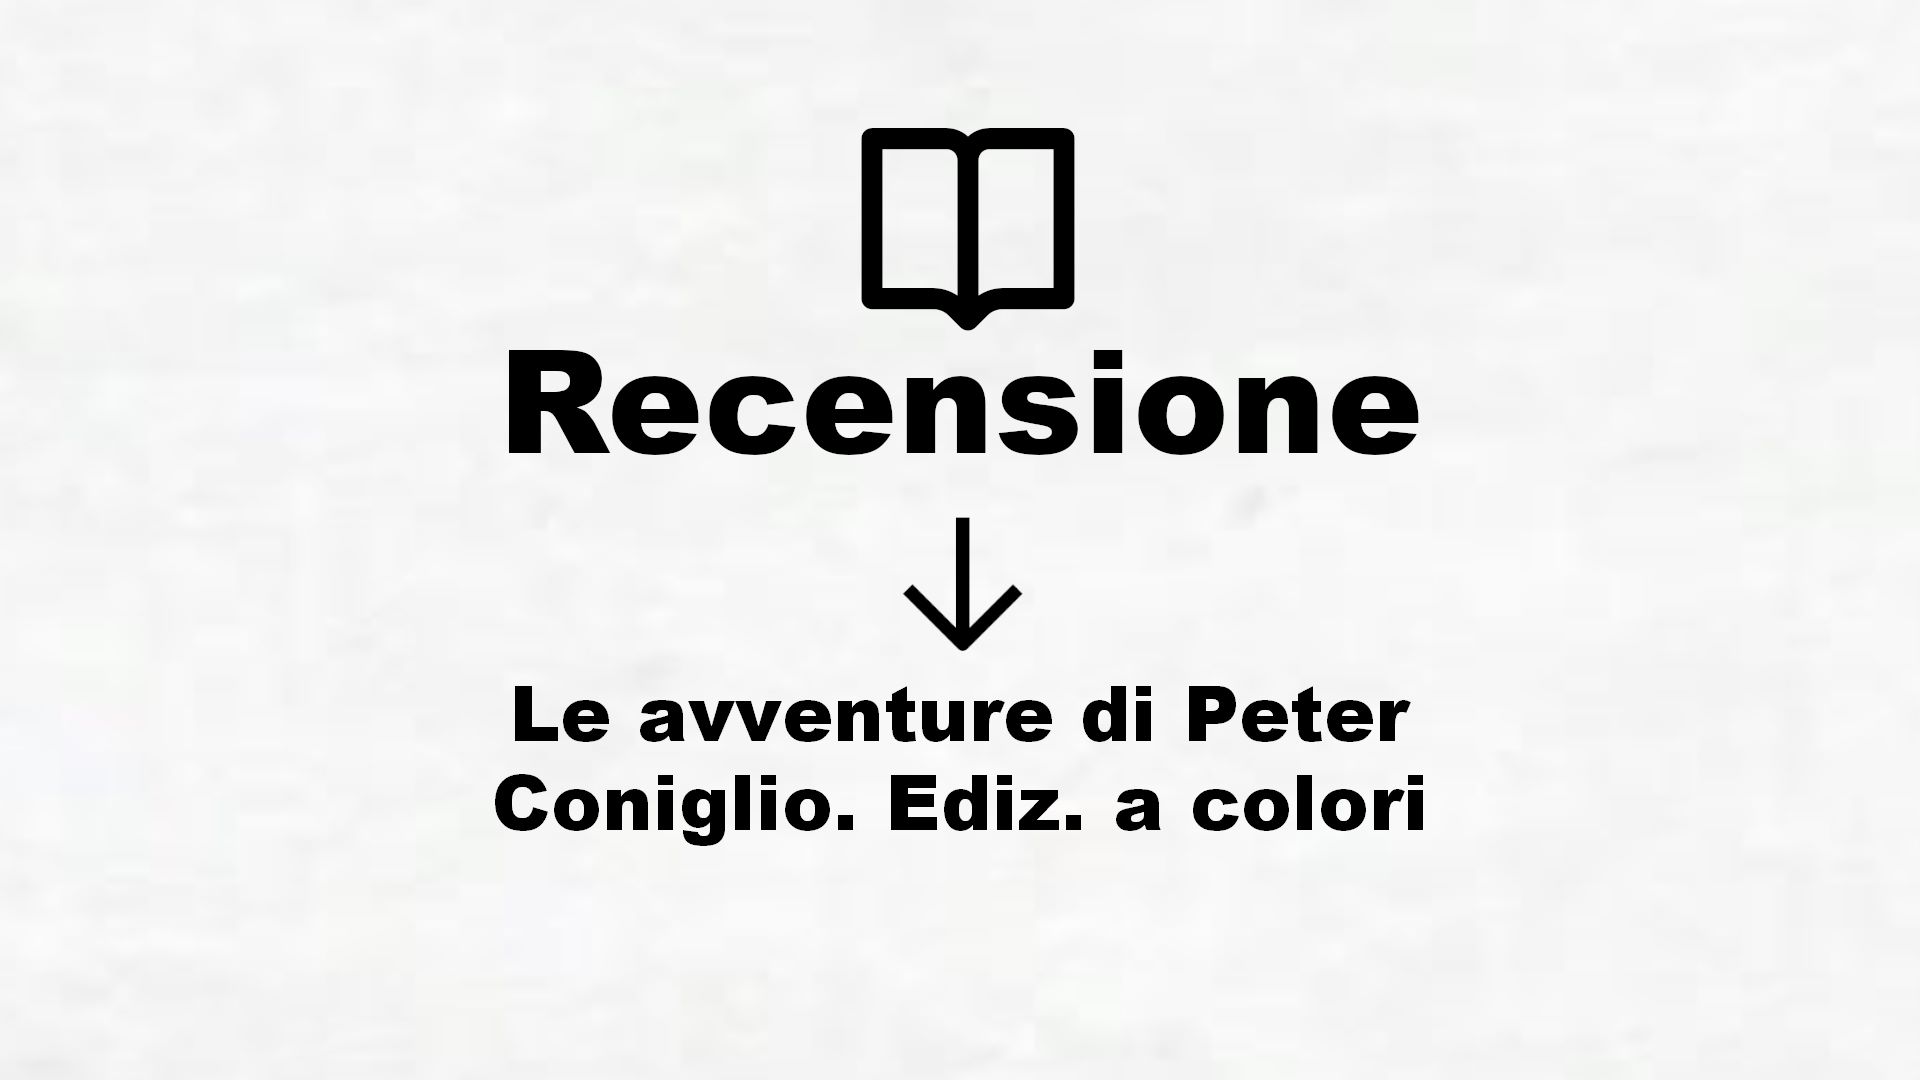 Le avventure di Peter Coniglio. Ediz. a colori – Recensione Libro